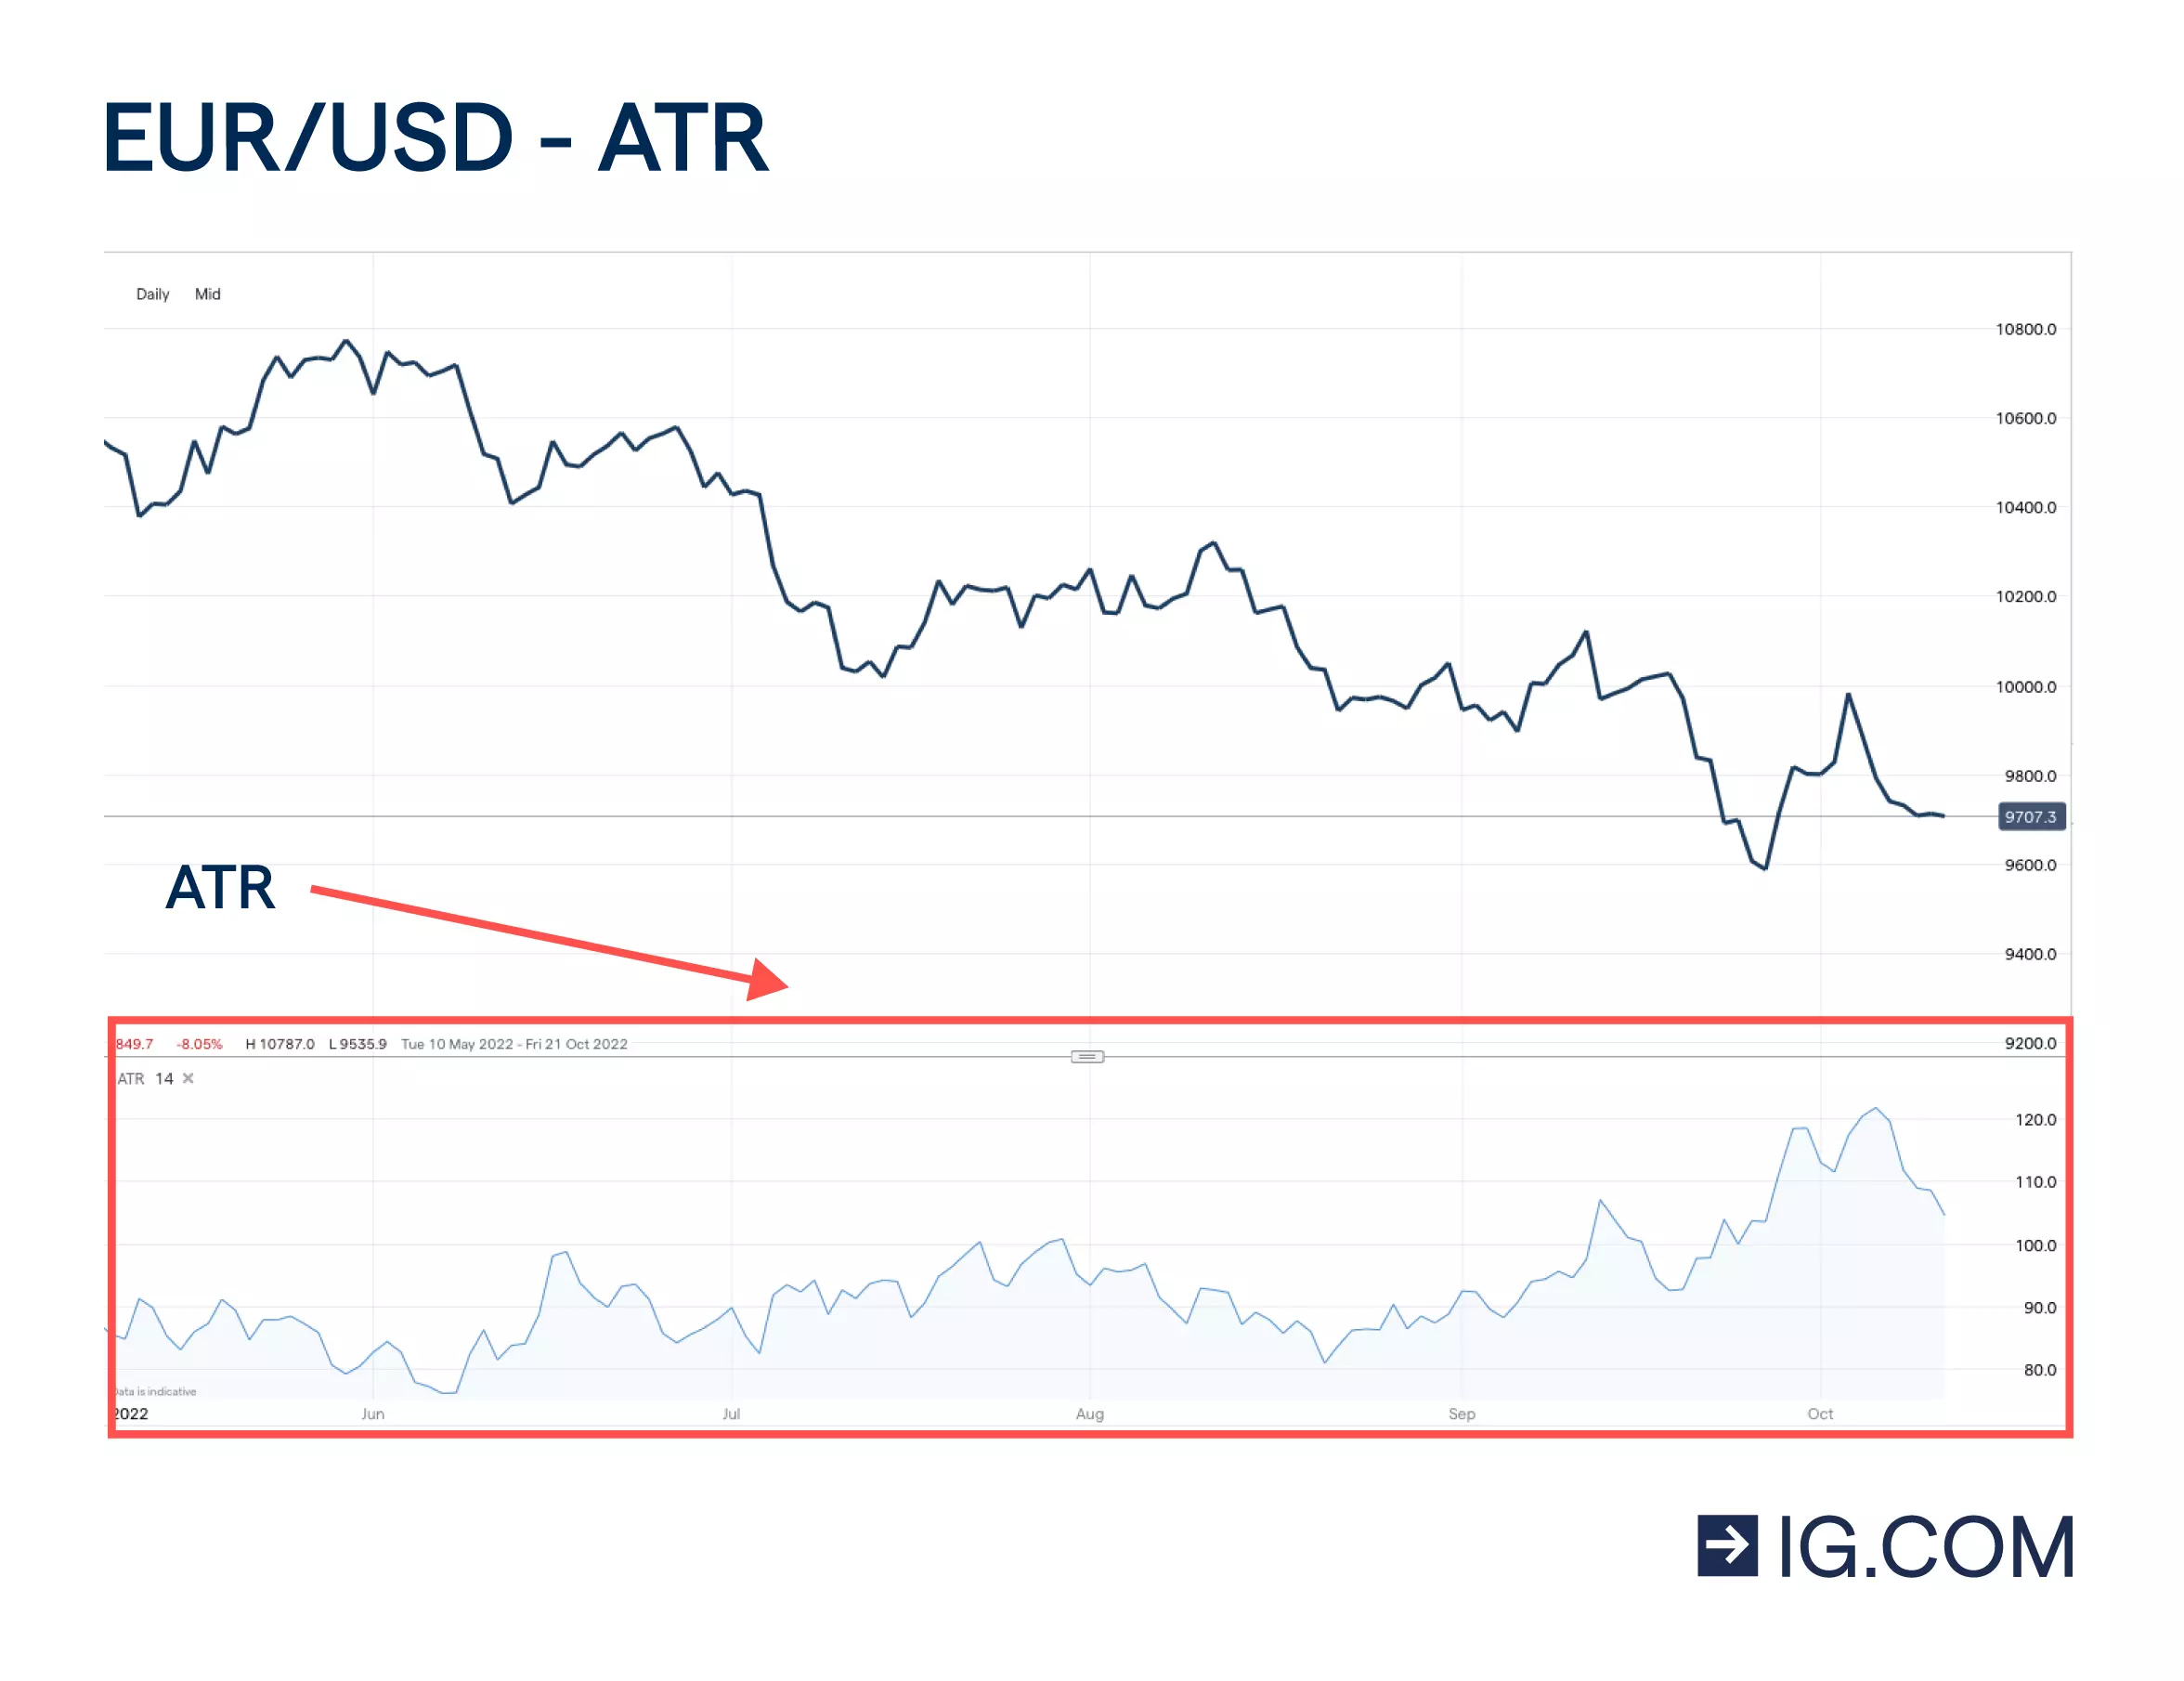 Un grafico a candele di EUR/USD con sotto il average true range (ATR) che riproduce i movimenti del grafico principale.